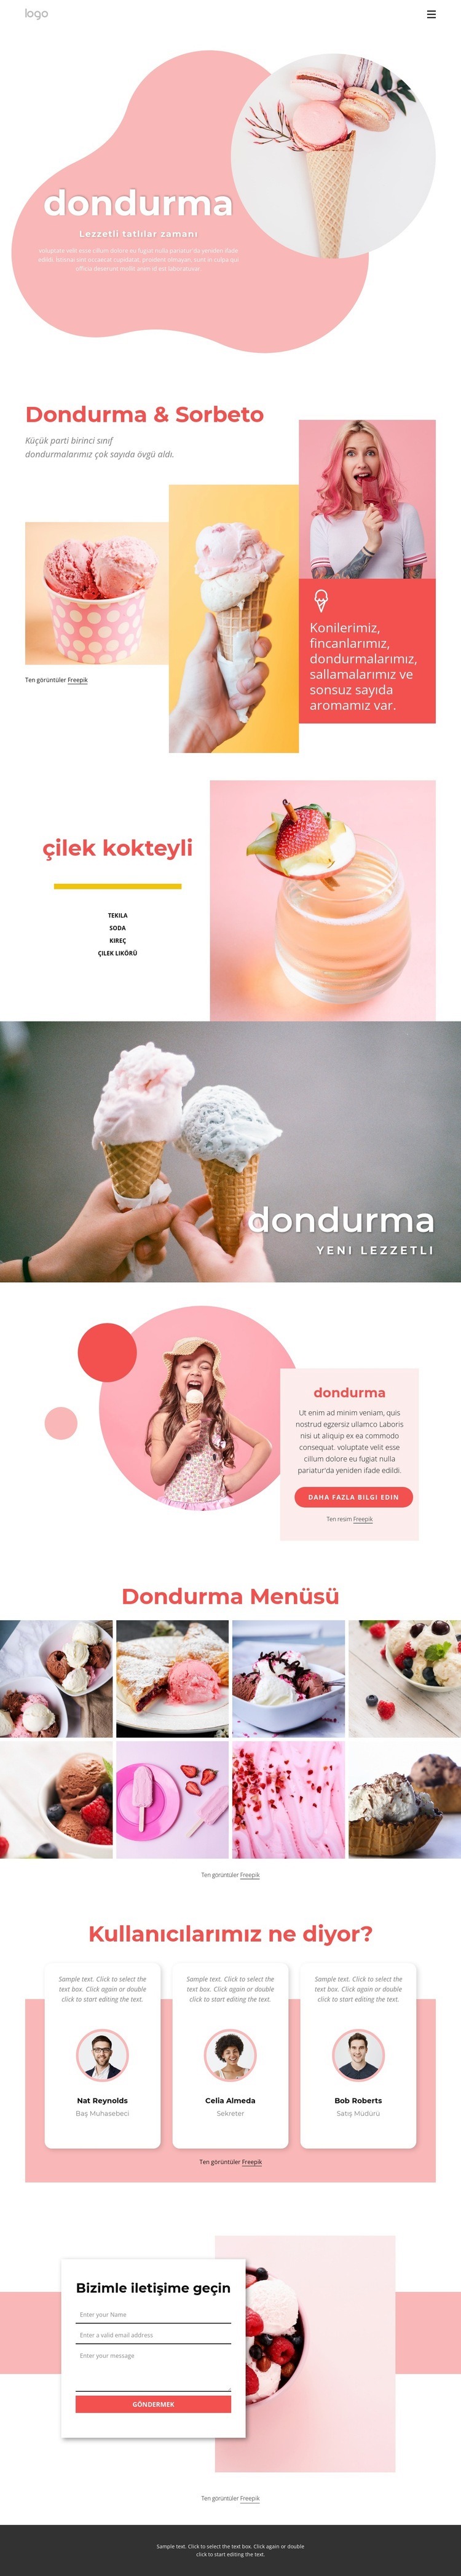 Dondurma ve Ffrozen yoğurt Web Sitesi Mockup'ı